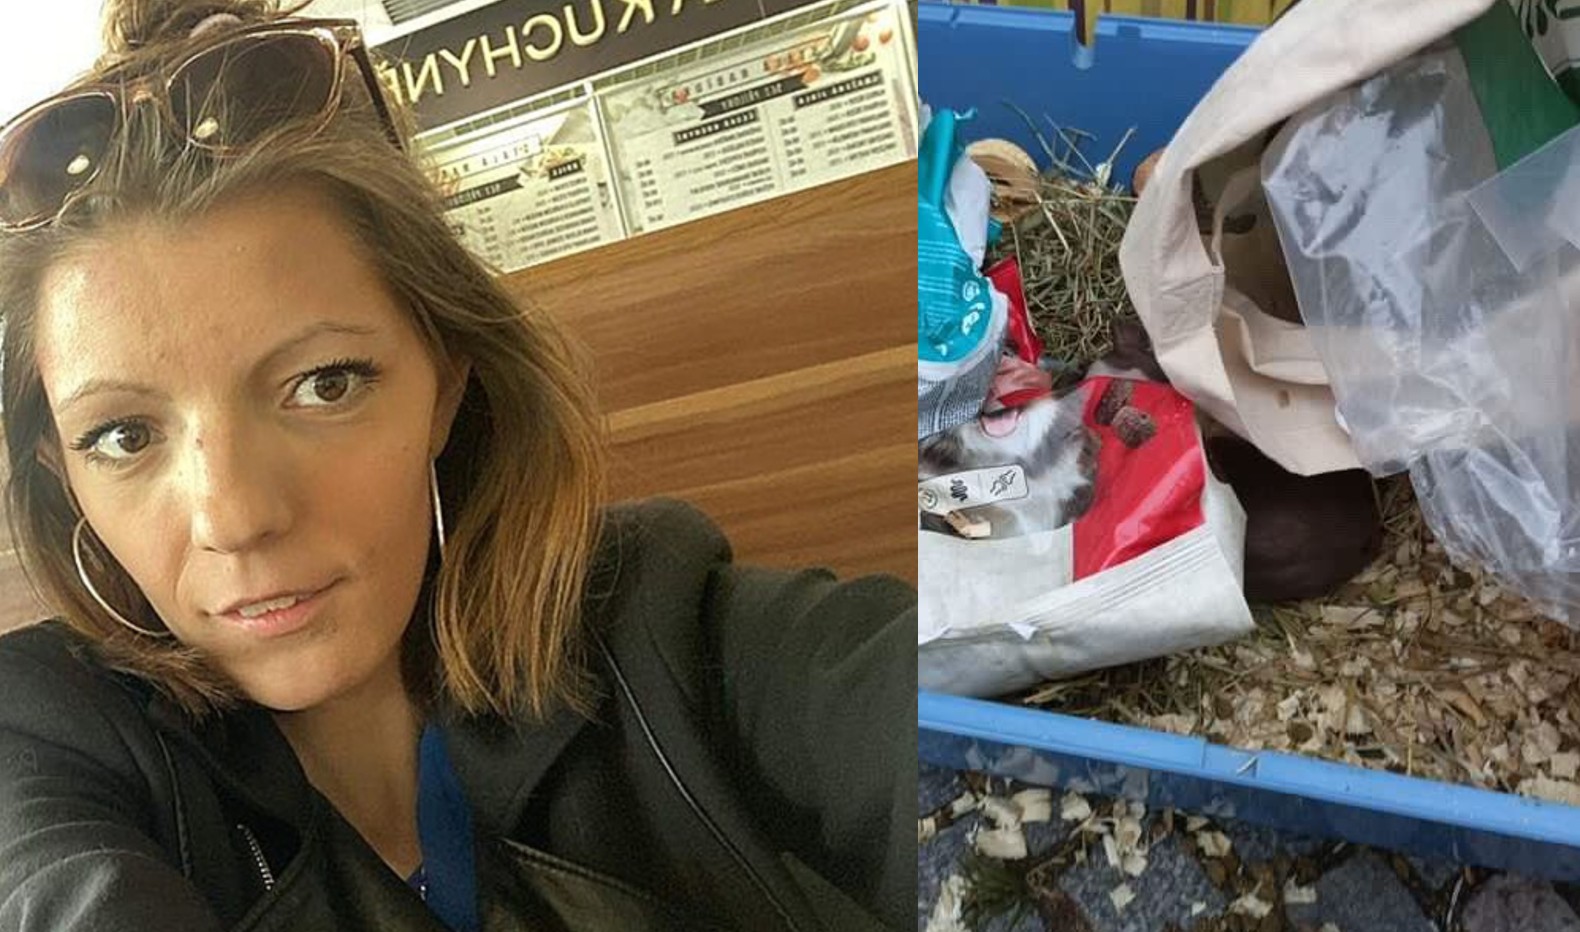 Shopaholicadel čelí kritice kvůli týrání zvířat Mrtvé morče u popelnic pes ve vážném stavu a